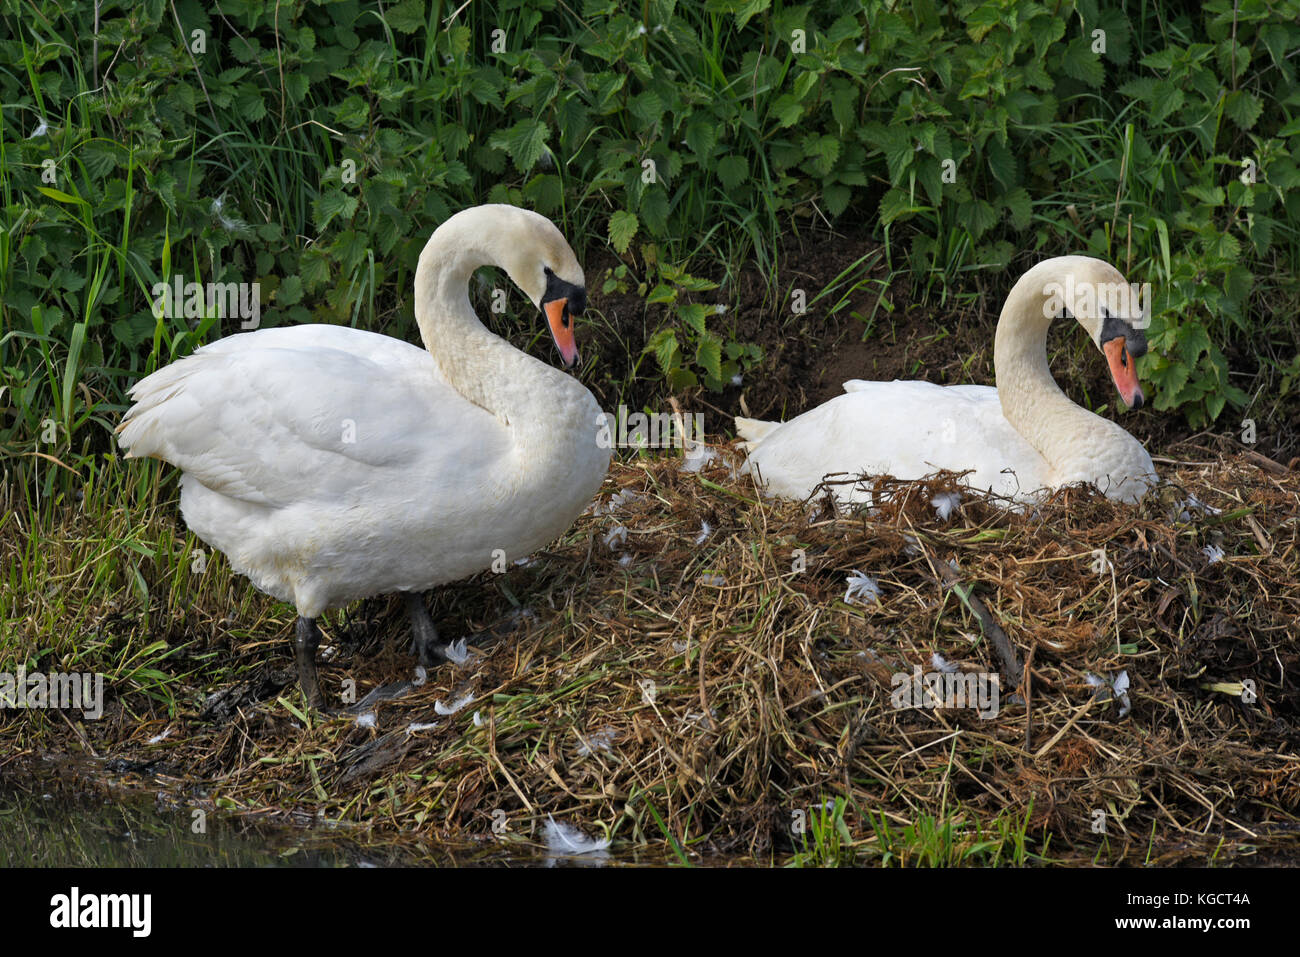 En swan anidan en el río gaywood, King's Lynn. Foto de stock